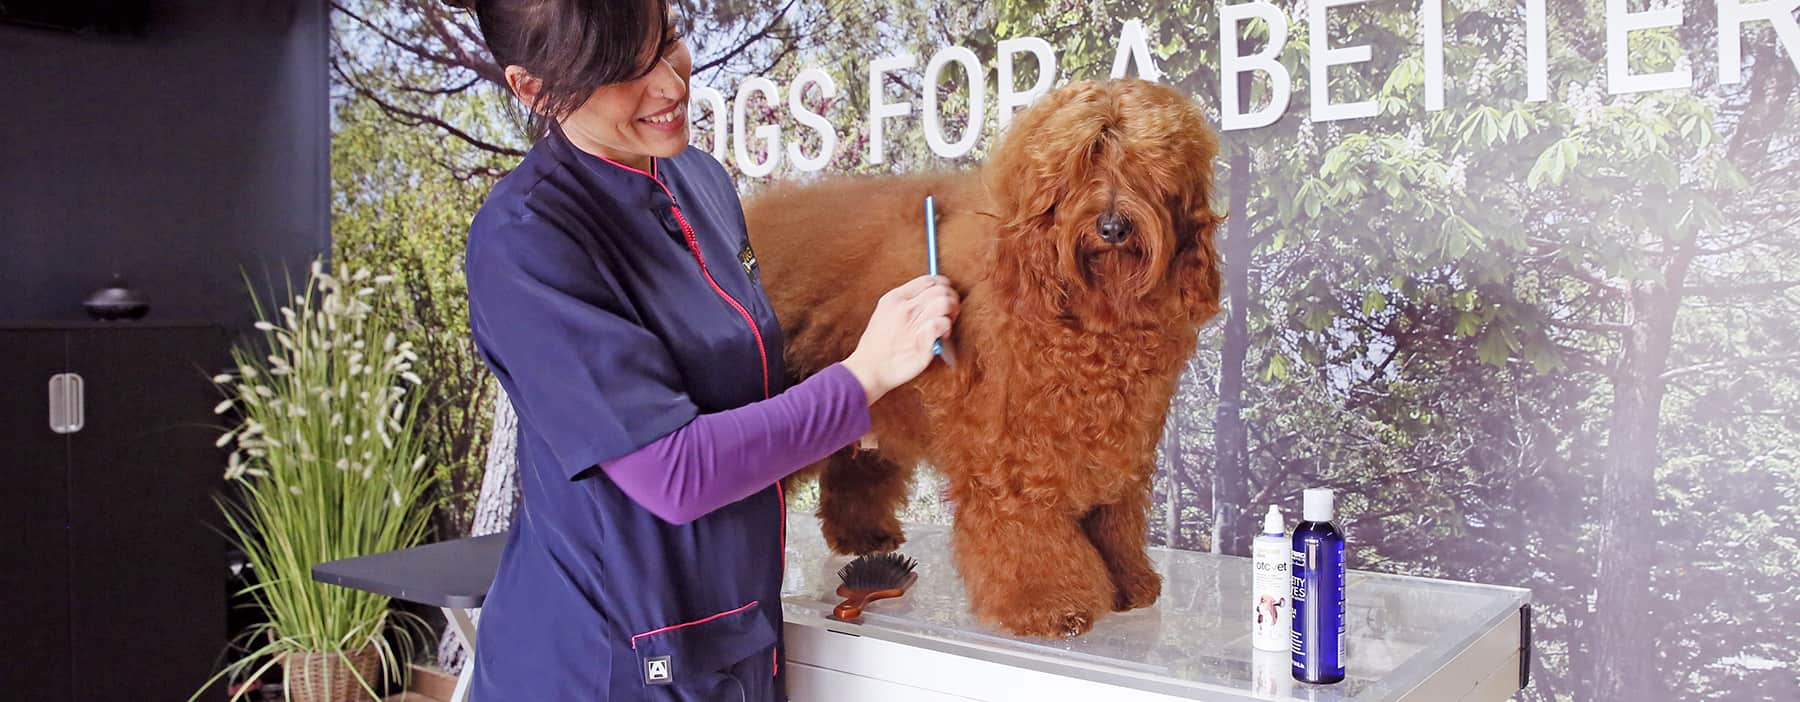 toiletteur de chien peignant un chien